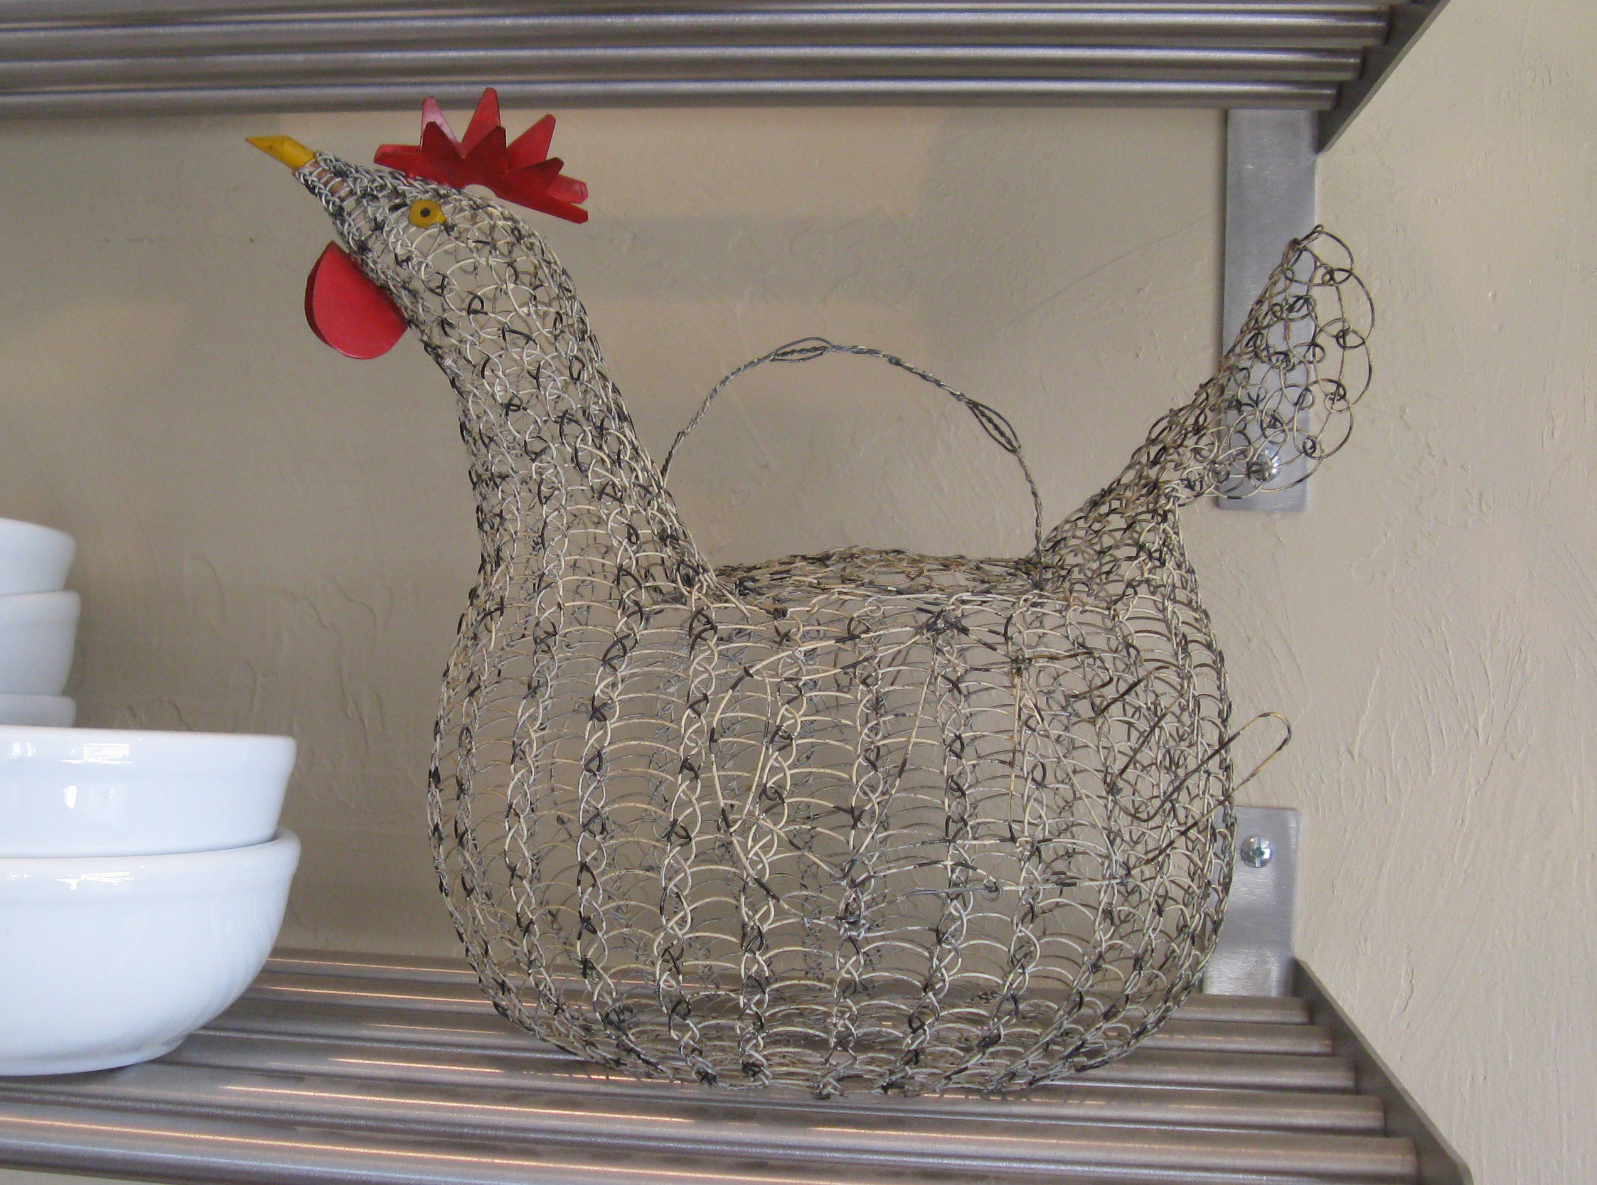 Chicken egg basket